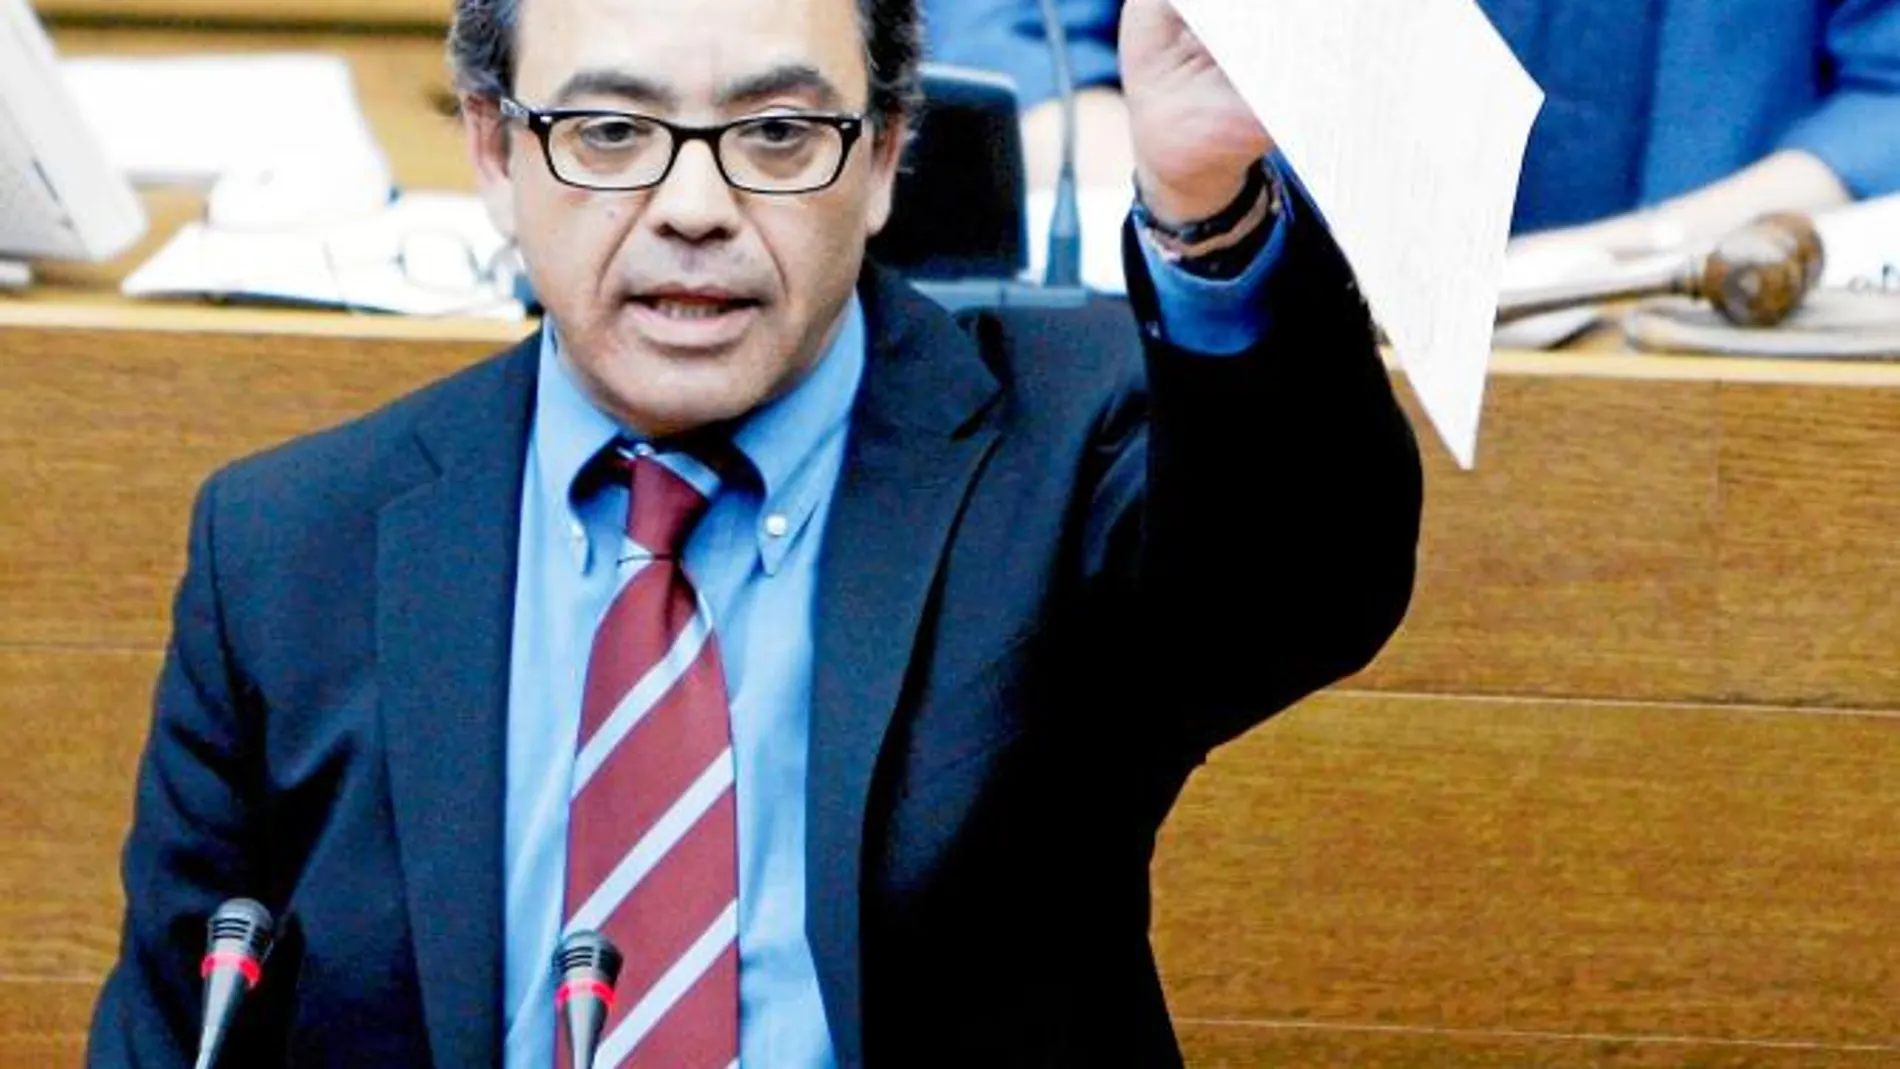 El ex diputado socialista en Les Corts, Manuel Mata, durante una intervención en una imagen del año 2010